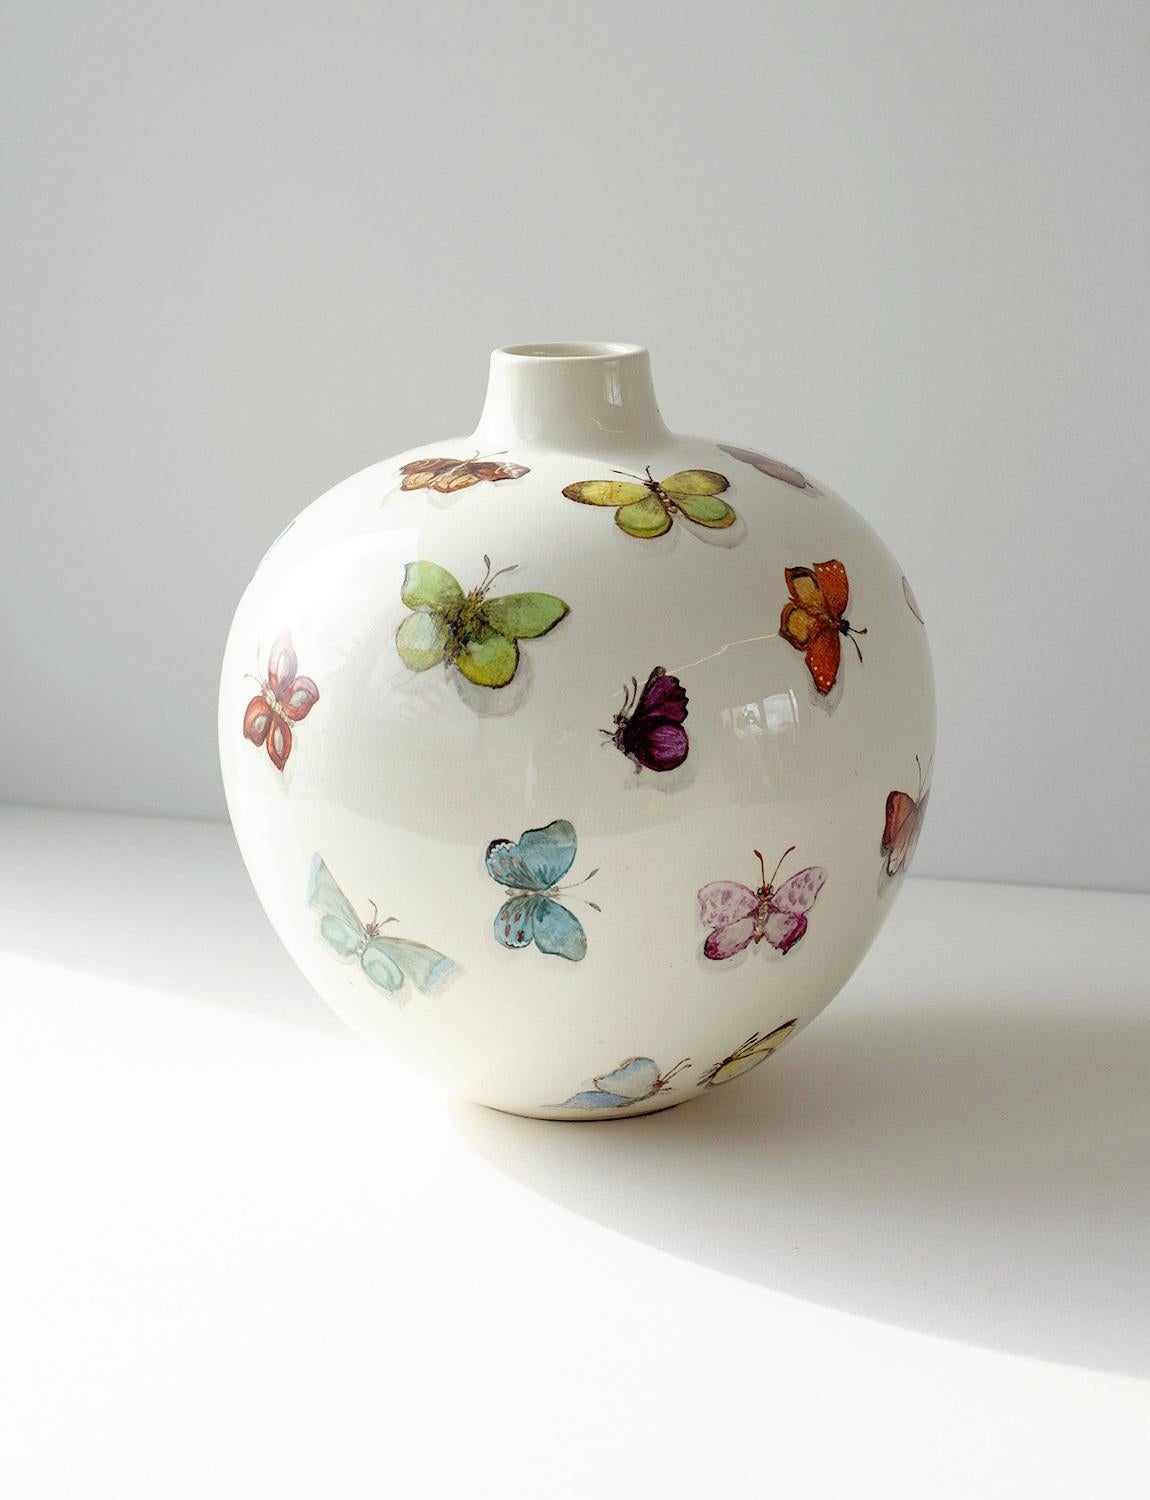 Diese außergewöhnlich seltene und schöne Schmetterlingsvase wurde von Guido Andlovitz für das Keramikunternehmen Società Ceramica Italiana, Lavenia, entworfen, wo er in den 1930er Jahren als Art Director tätig war. Diese Form und dieser Stil der